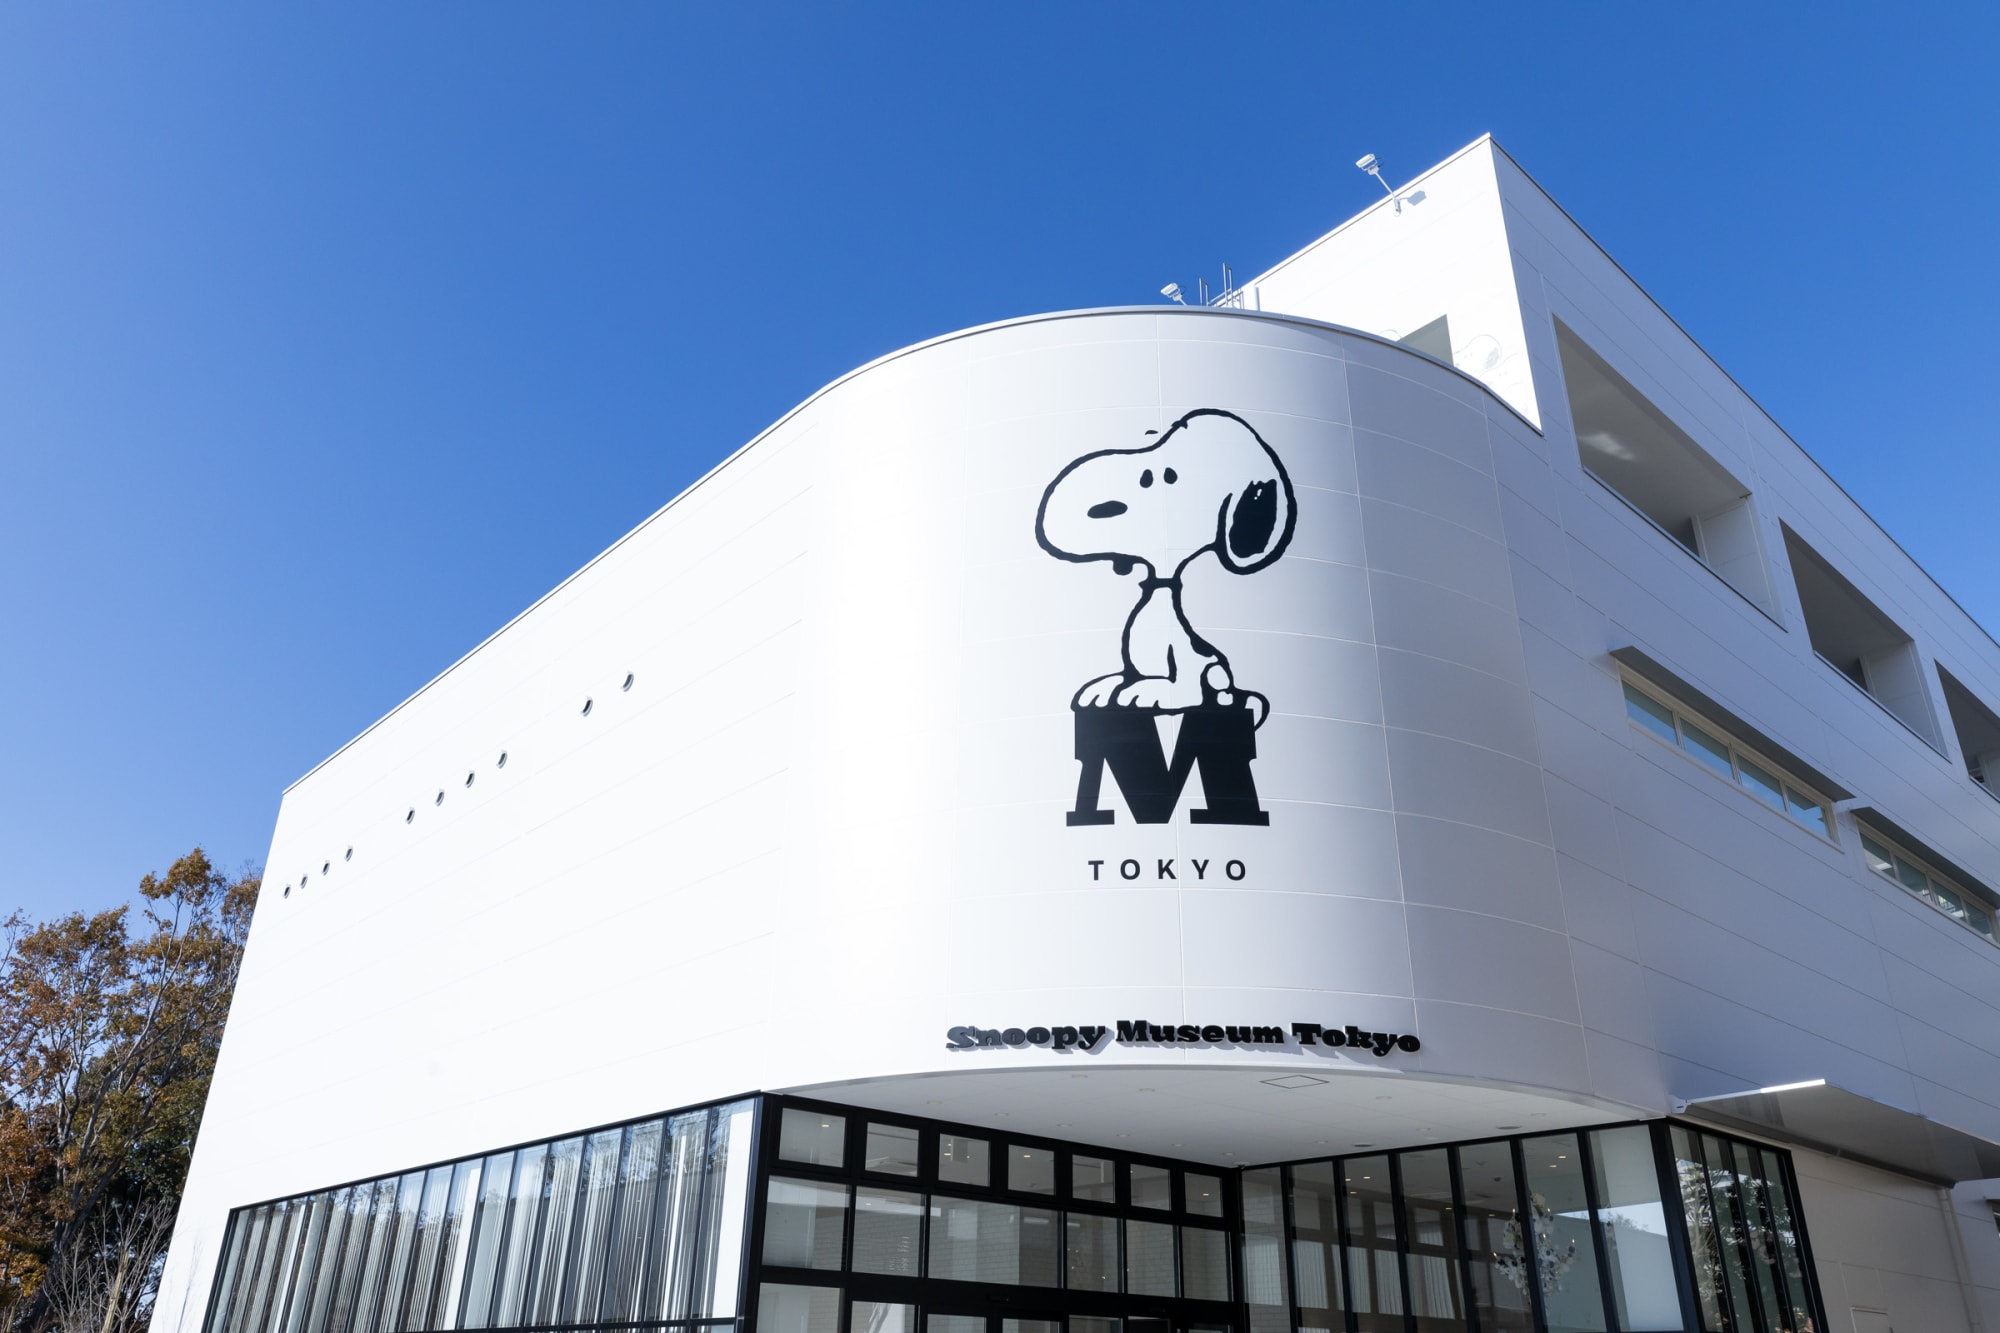 スヌーピーミュージアムが南町田に移転オープン 全長8mの巨大スヌーピーの展示も